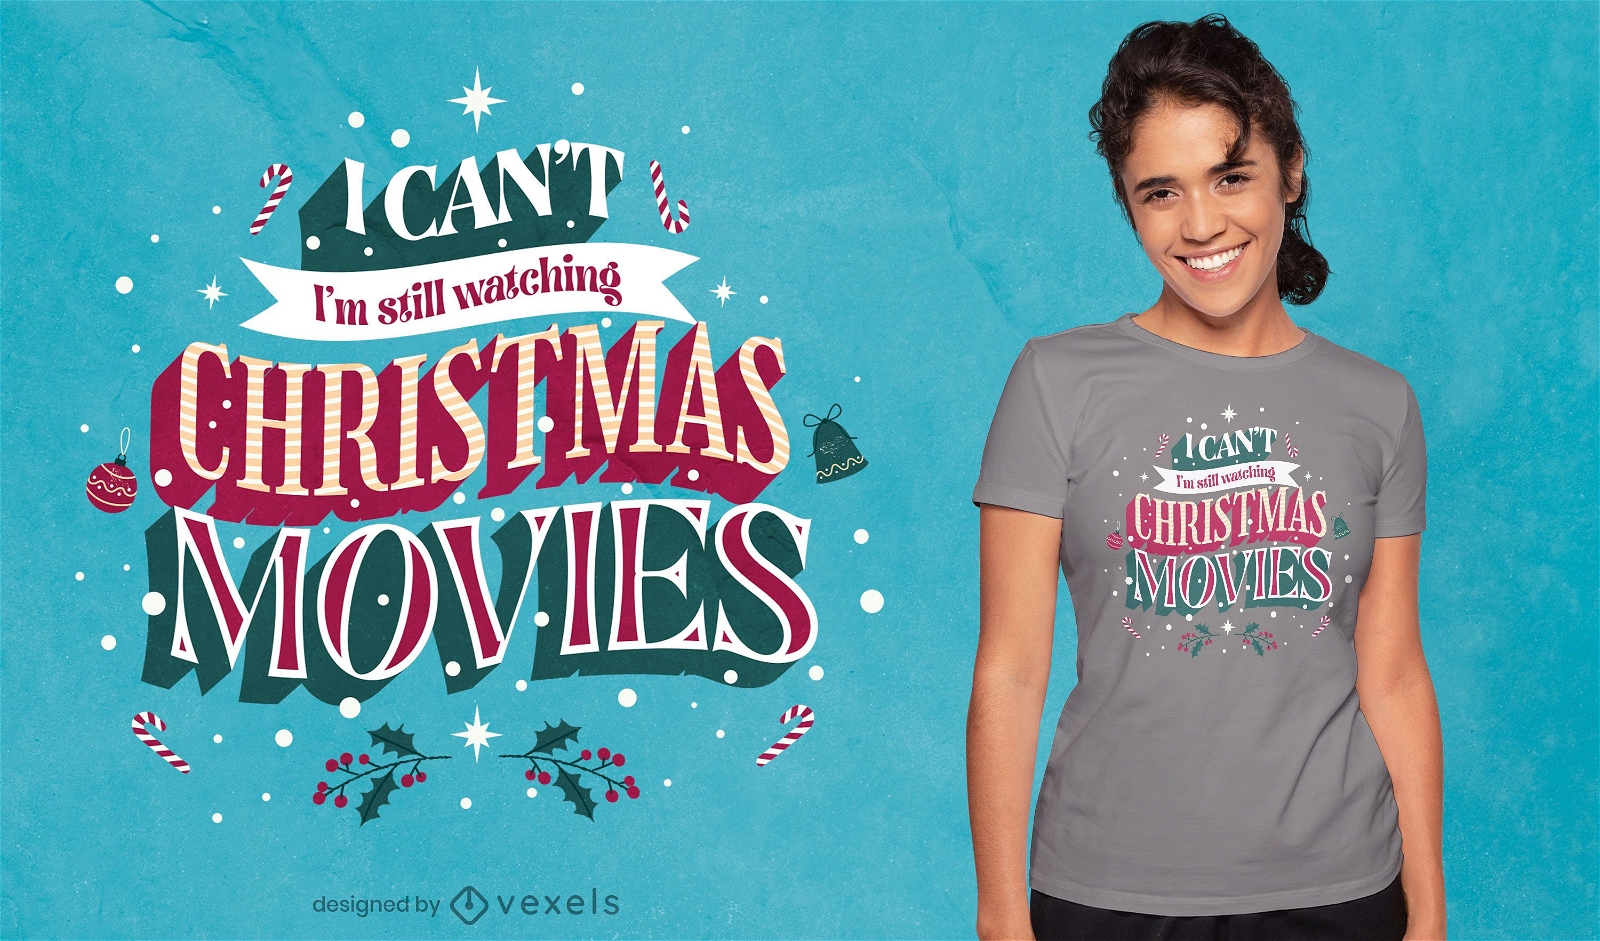 Diseño de camiseta con cita de películas navideñas.